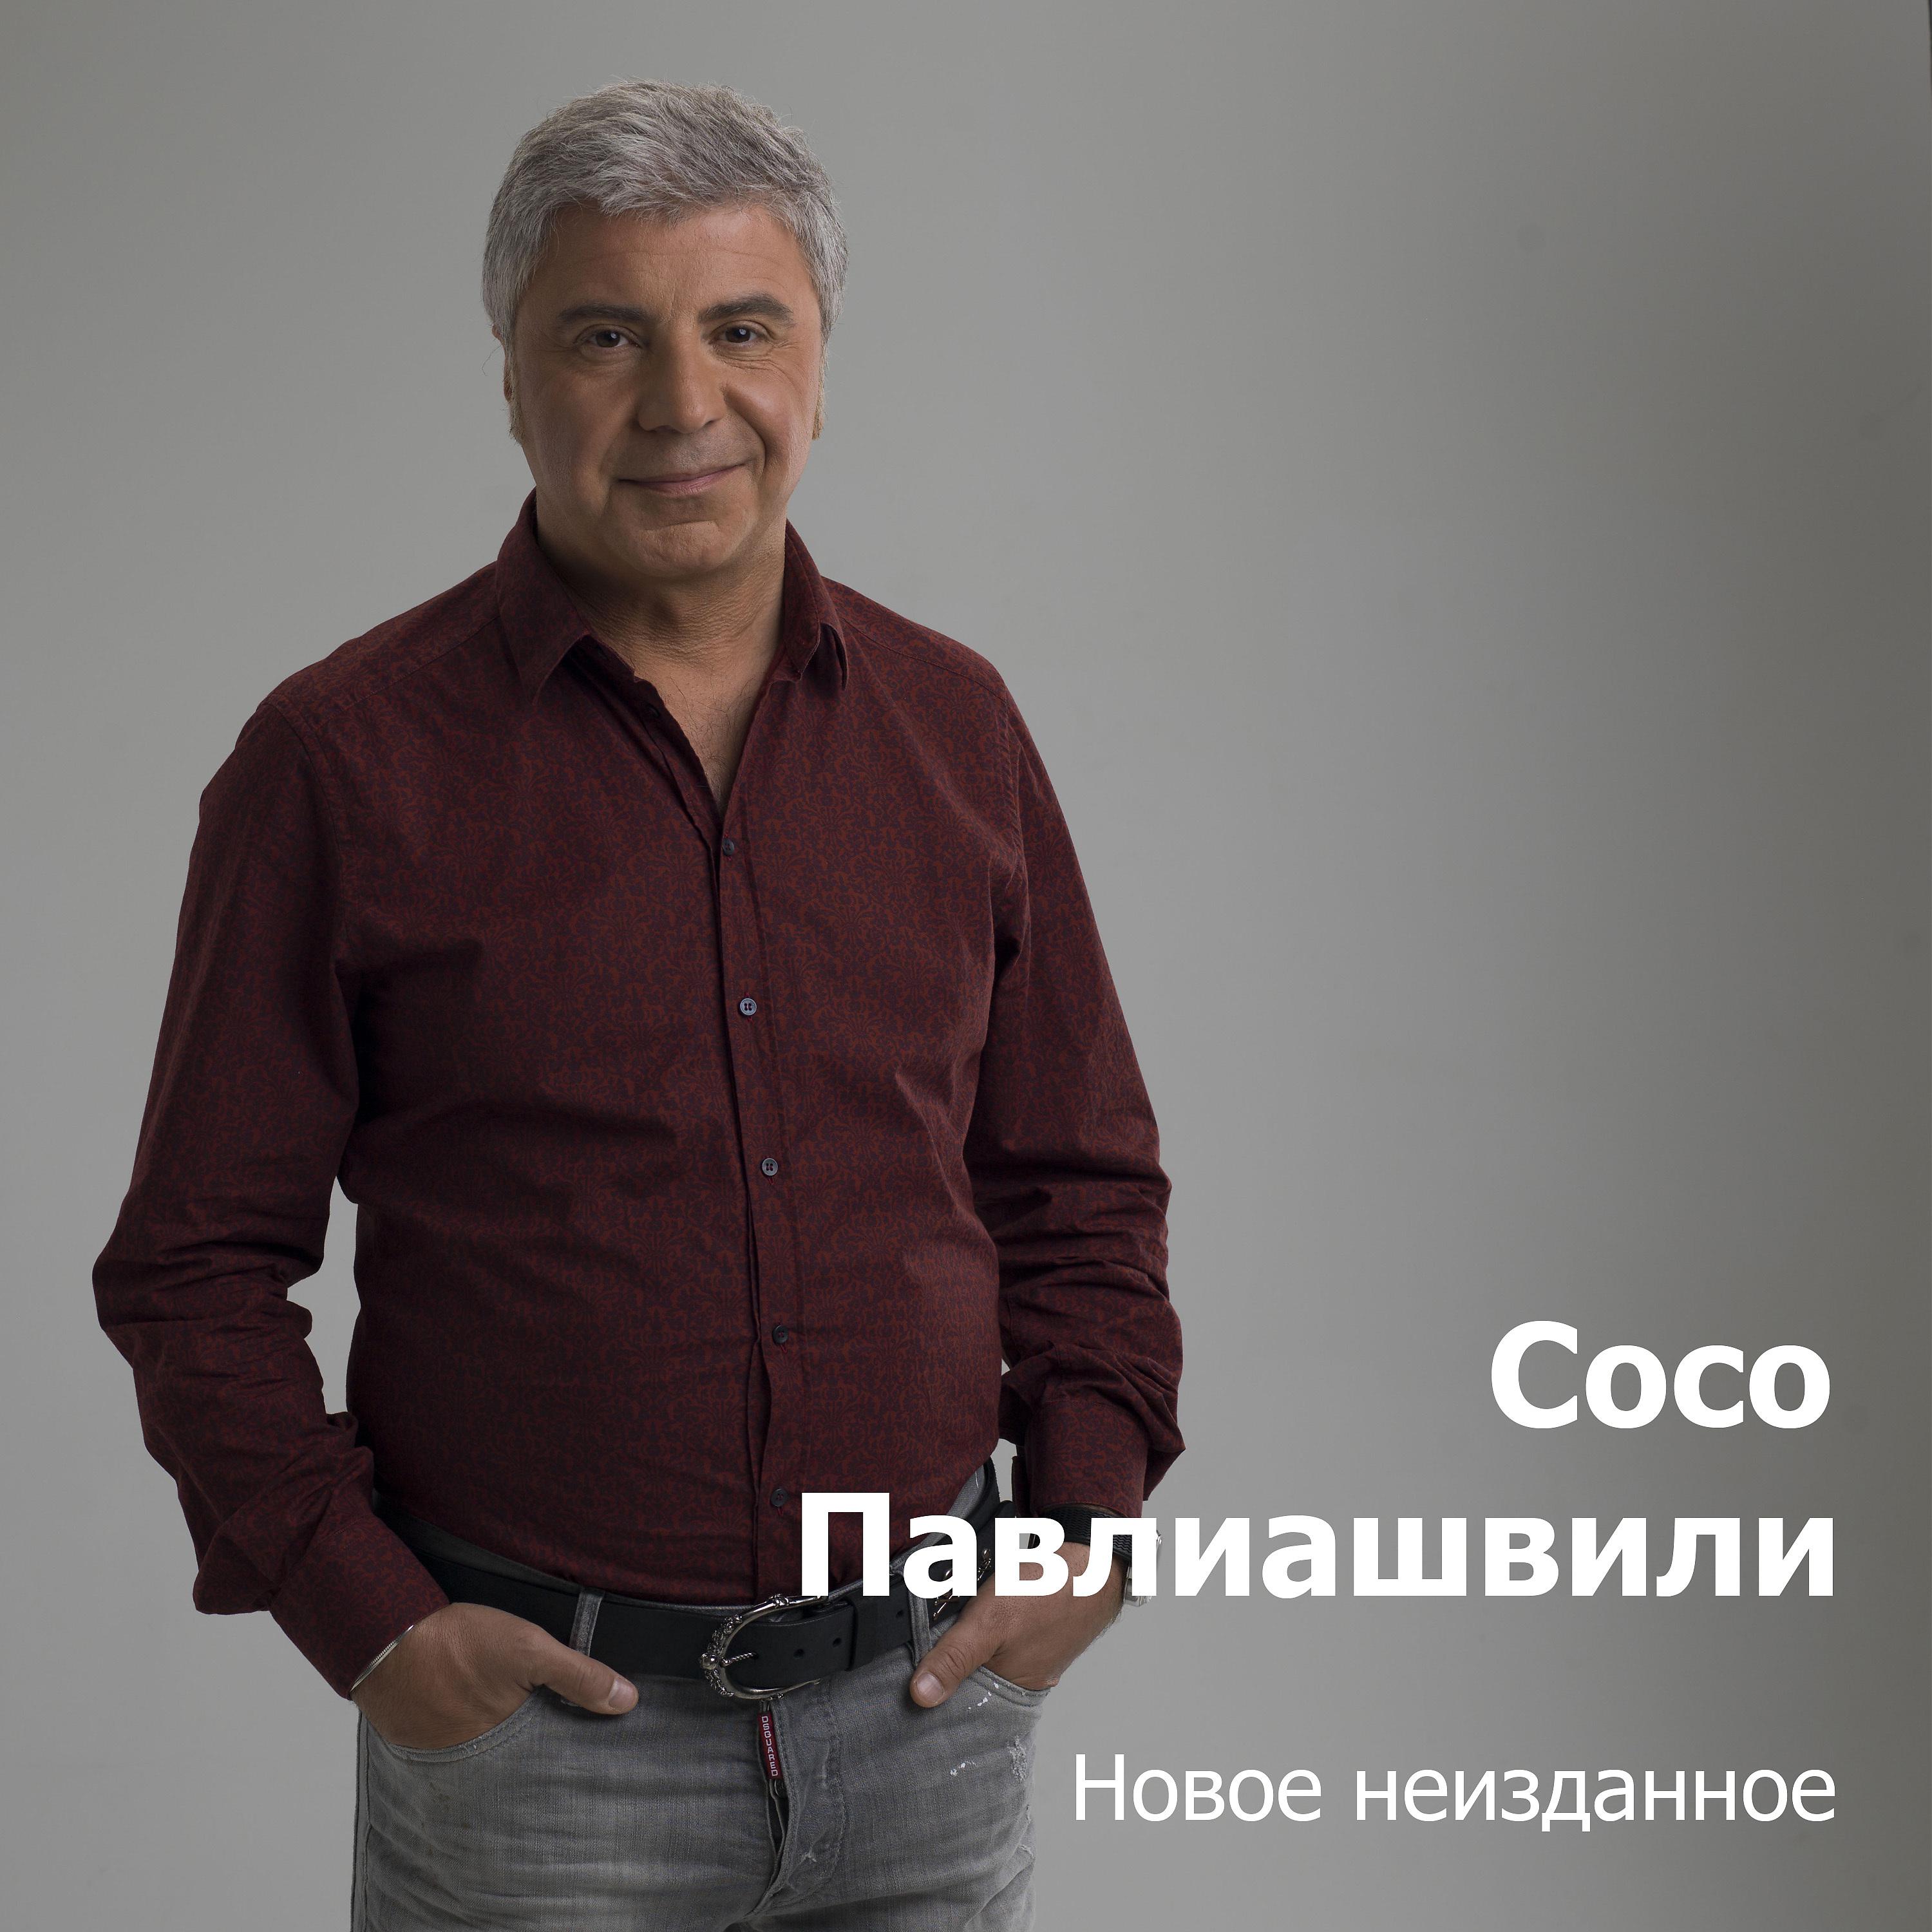 Сосо Павлиашвили - Моя мелодия